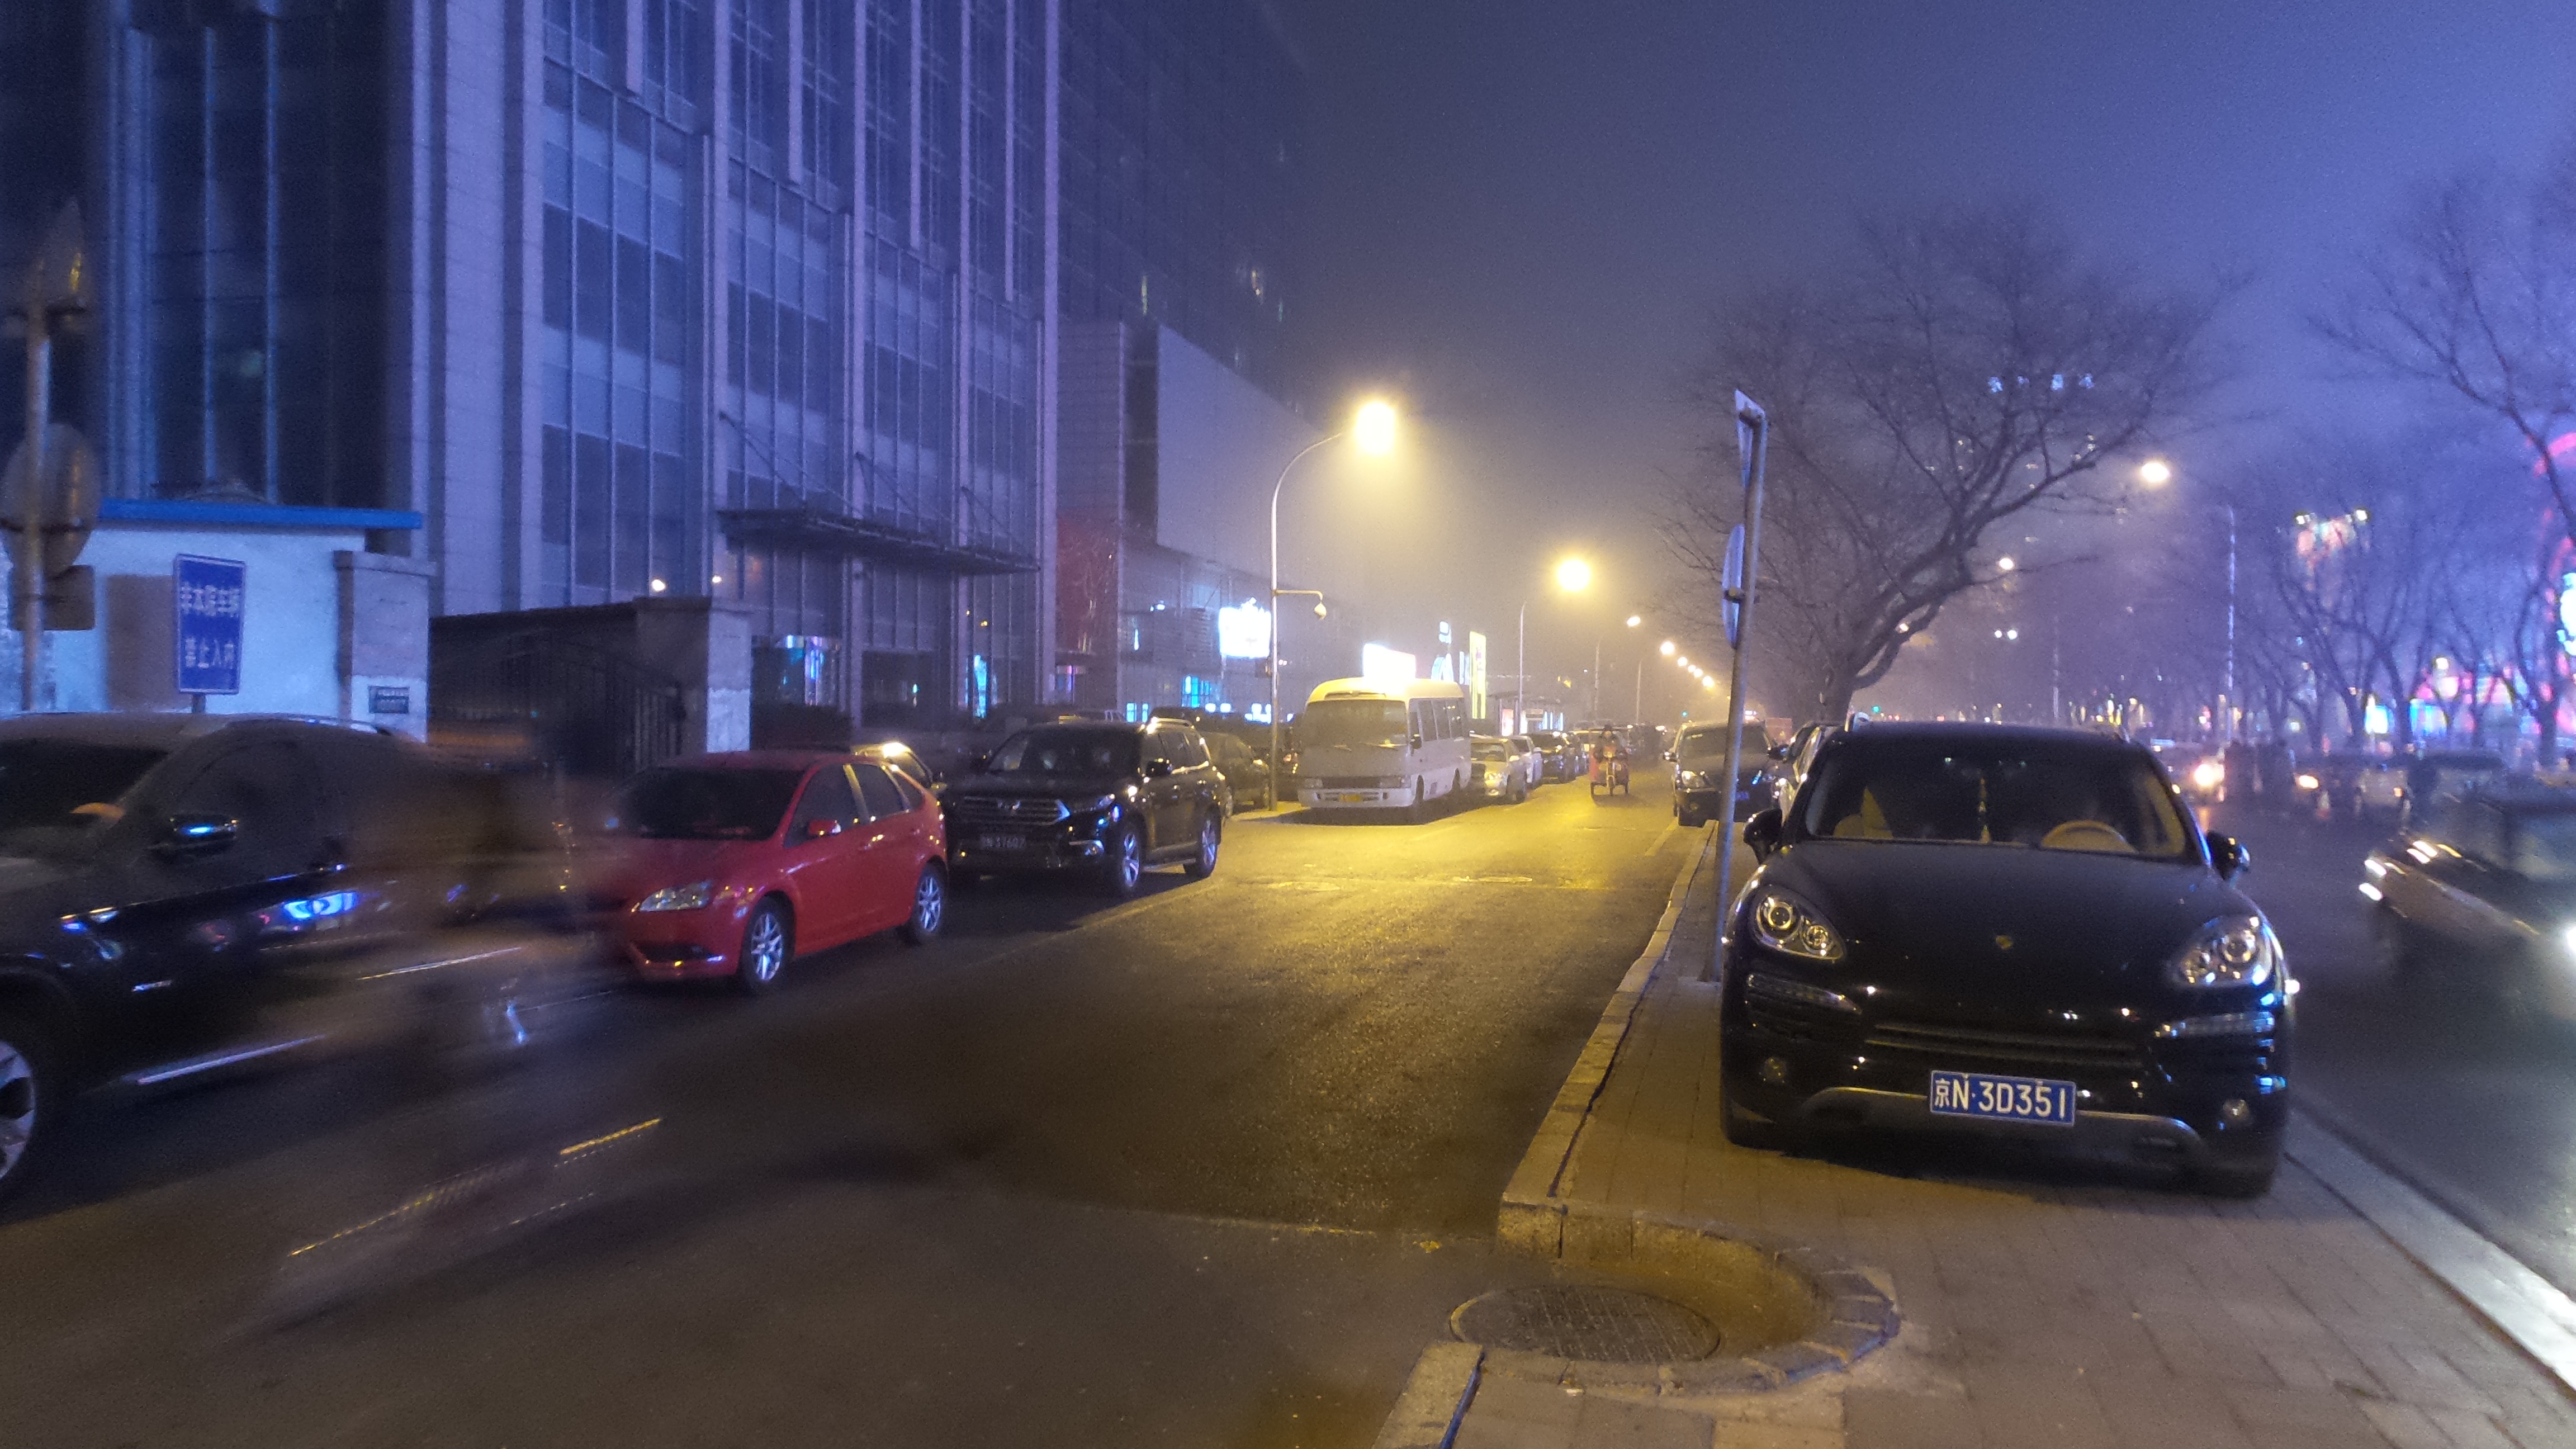 beijing smog